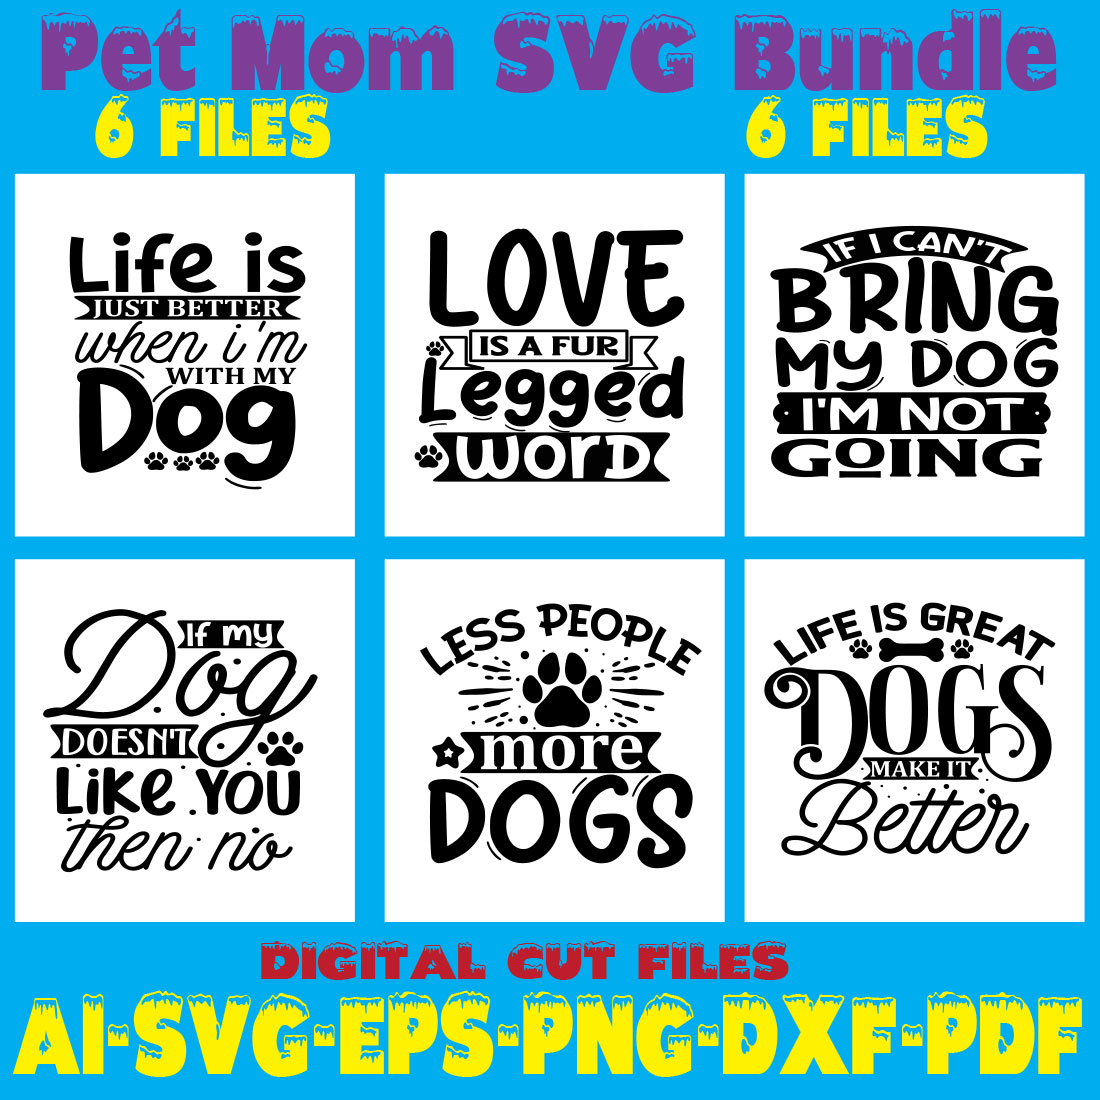 Dog Mom SVG Bundle cover image.